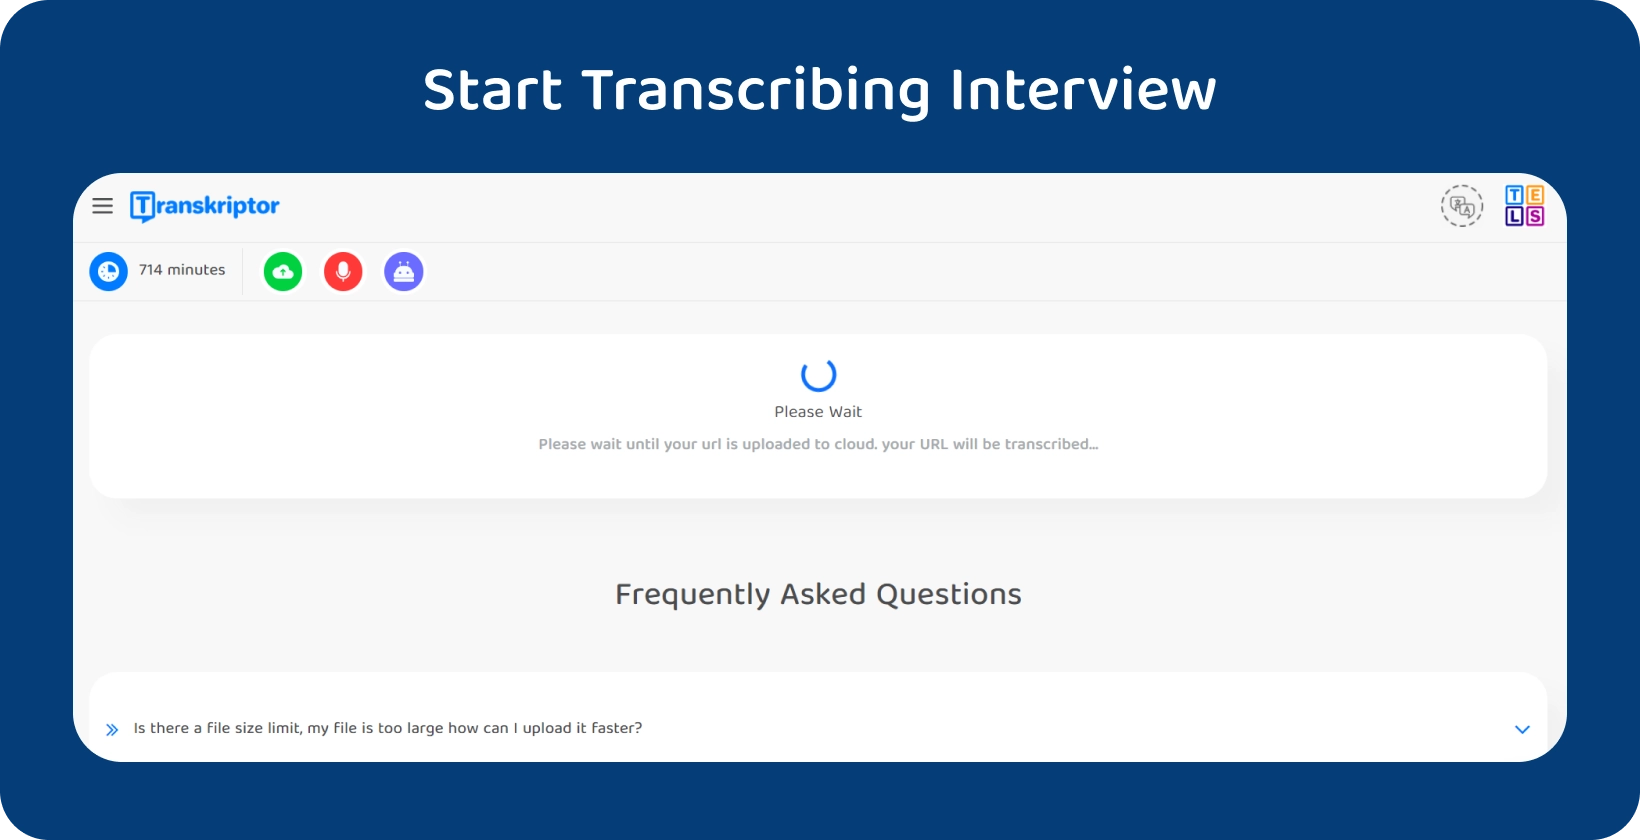 Începeți transcrierea disertației cu Transkriptor, arătând un interviu de 714 minute care așteaptă procesarea.